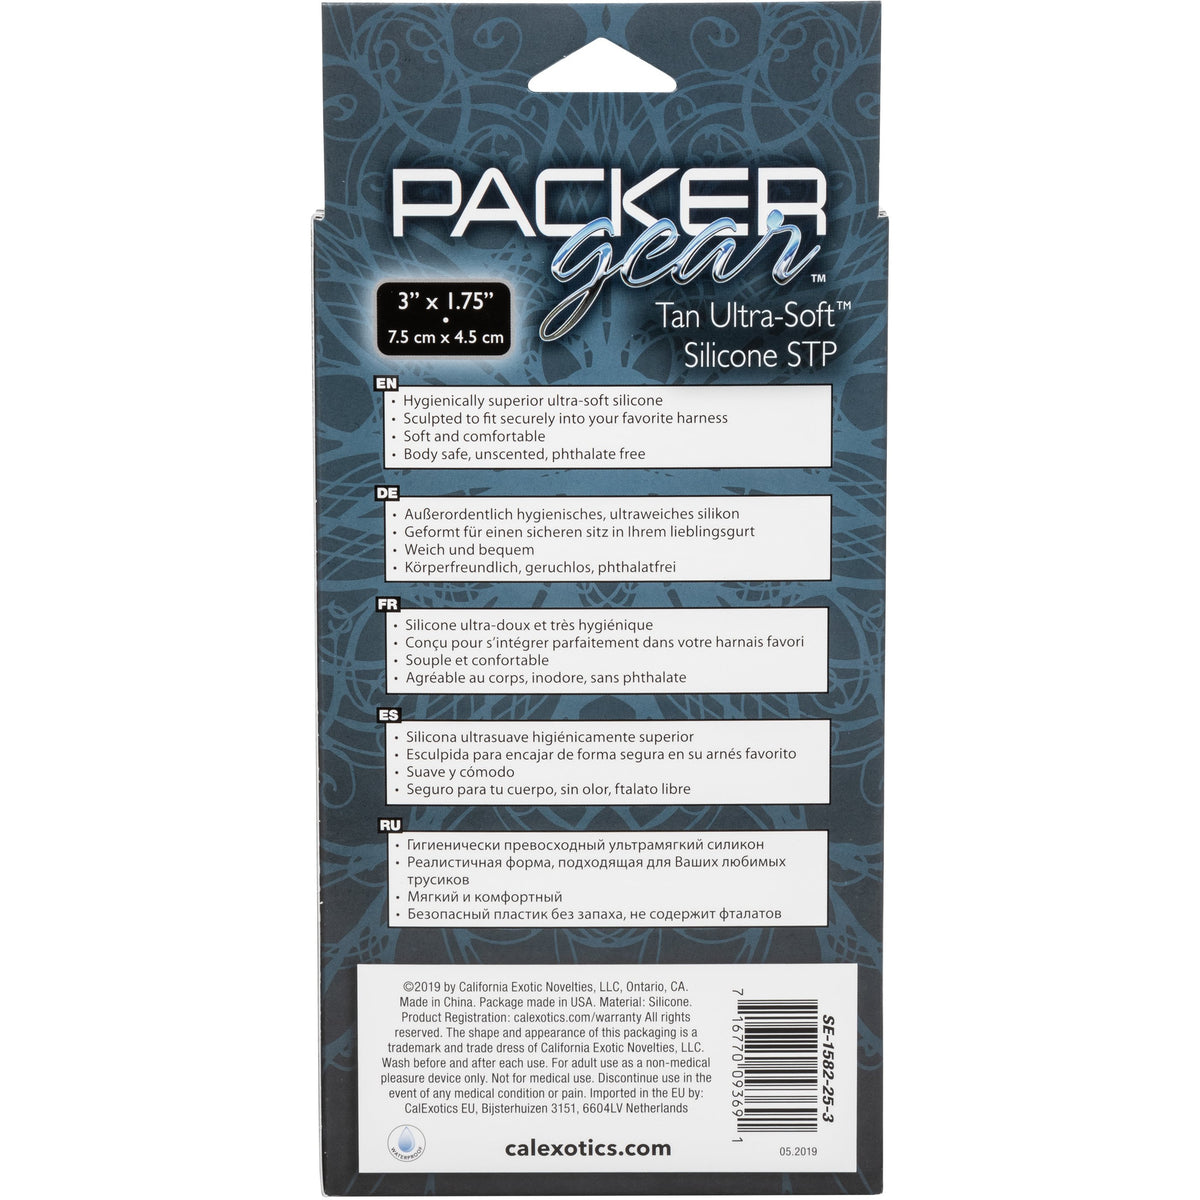 CalExotics Packer Gear STP Packer – Tan